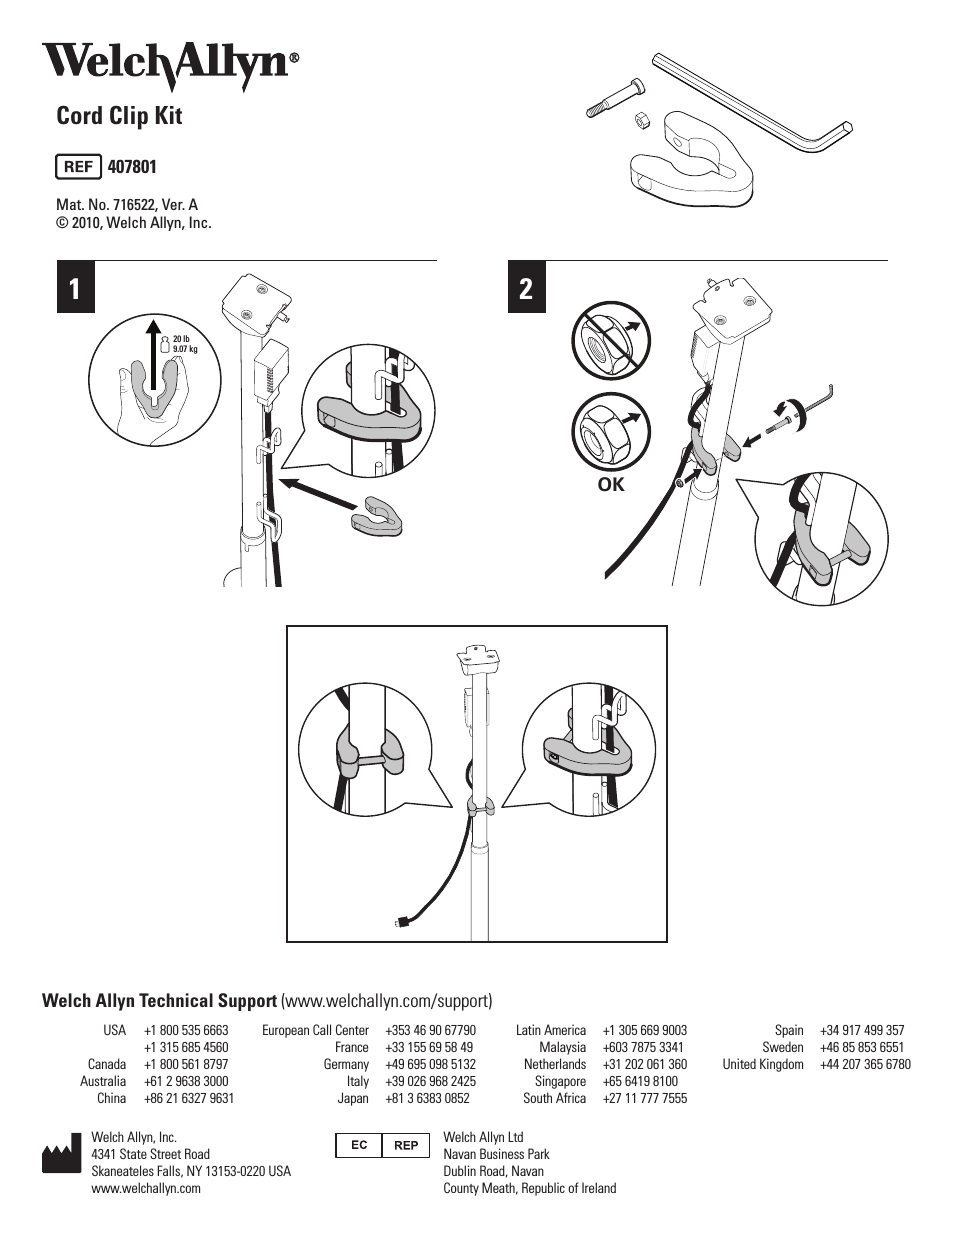 407801 Cord Clip Kit - User Manual